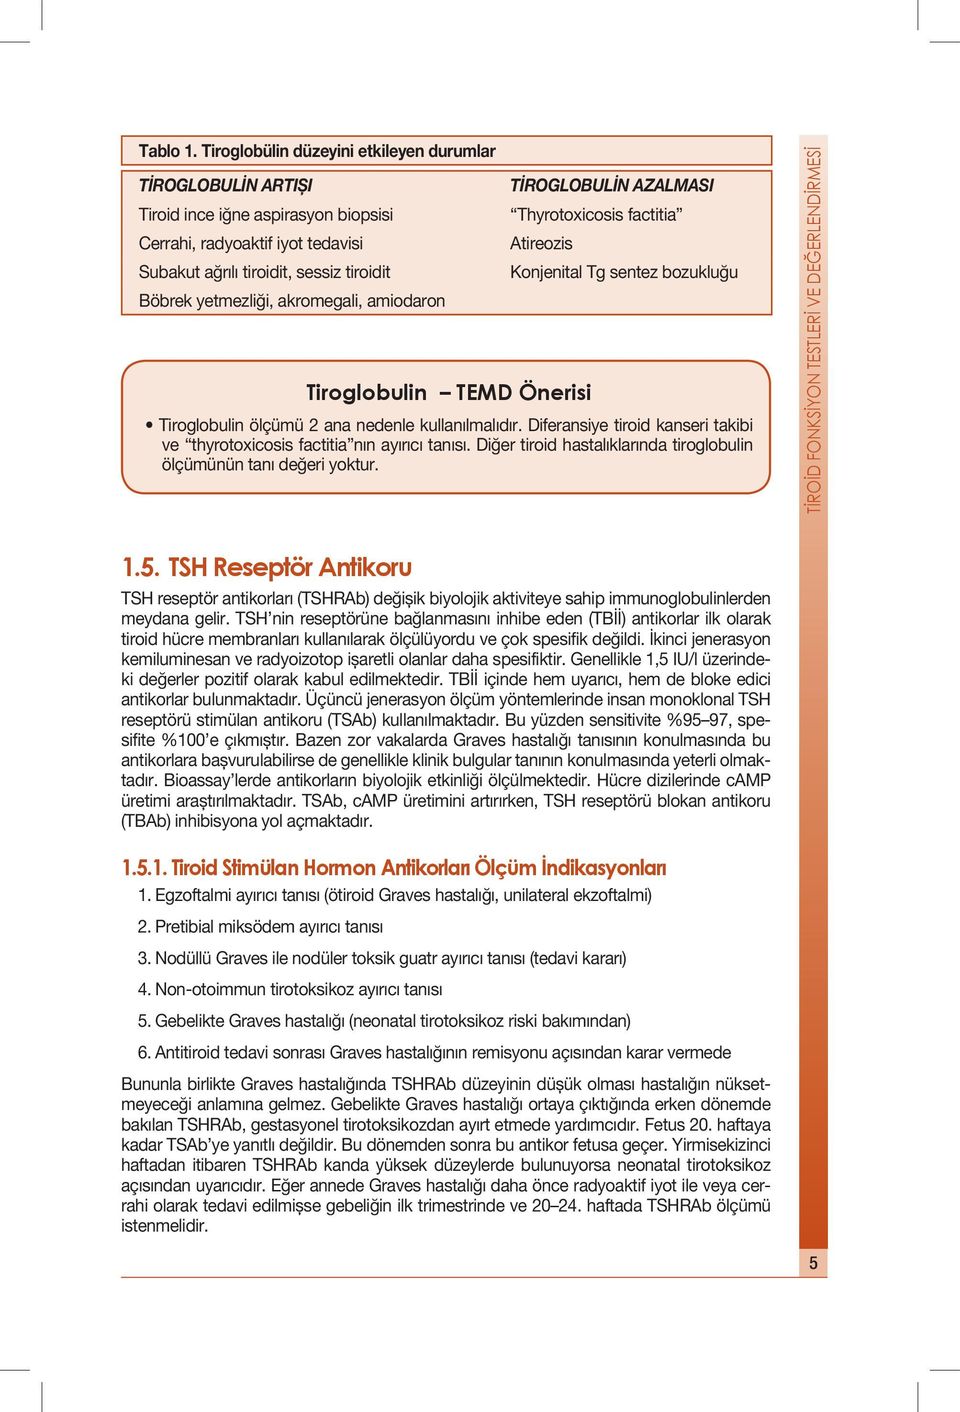 akromegali, amiodaron TİROGLOBULİN AZALMASI Thyrotoxicosis factitia Atireozis Konjenital Tg sentez bozukluğu Tiroglobulin TEMD Önerisi Tiroglobulin ölçümü 2 ana nedenle kullanılmalıdır.